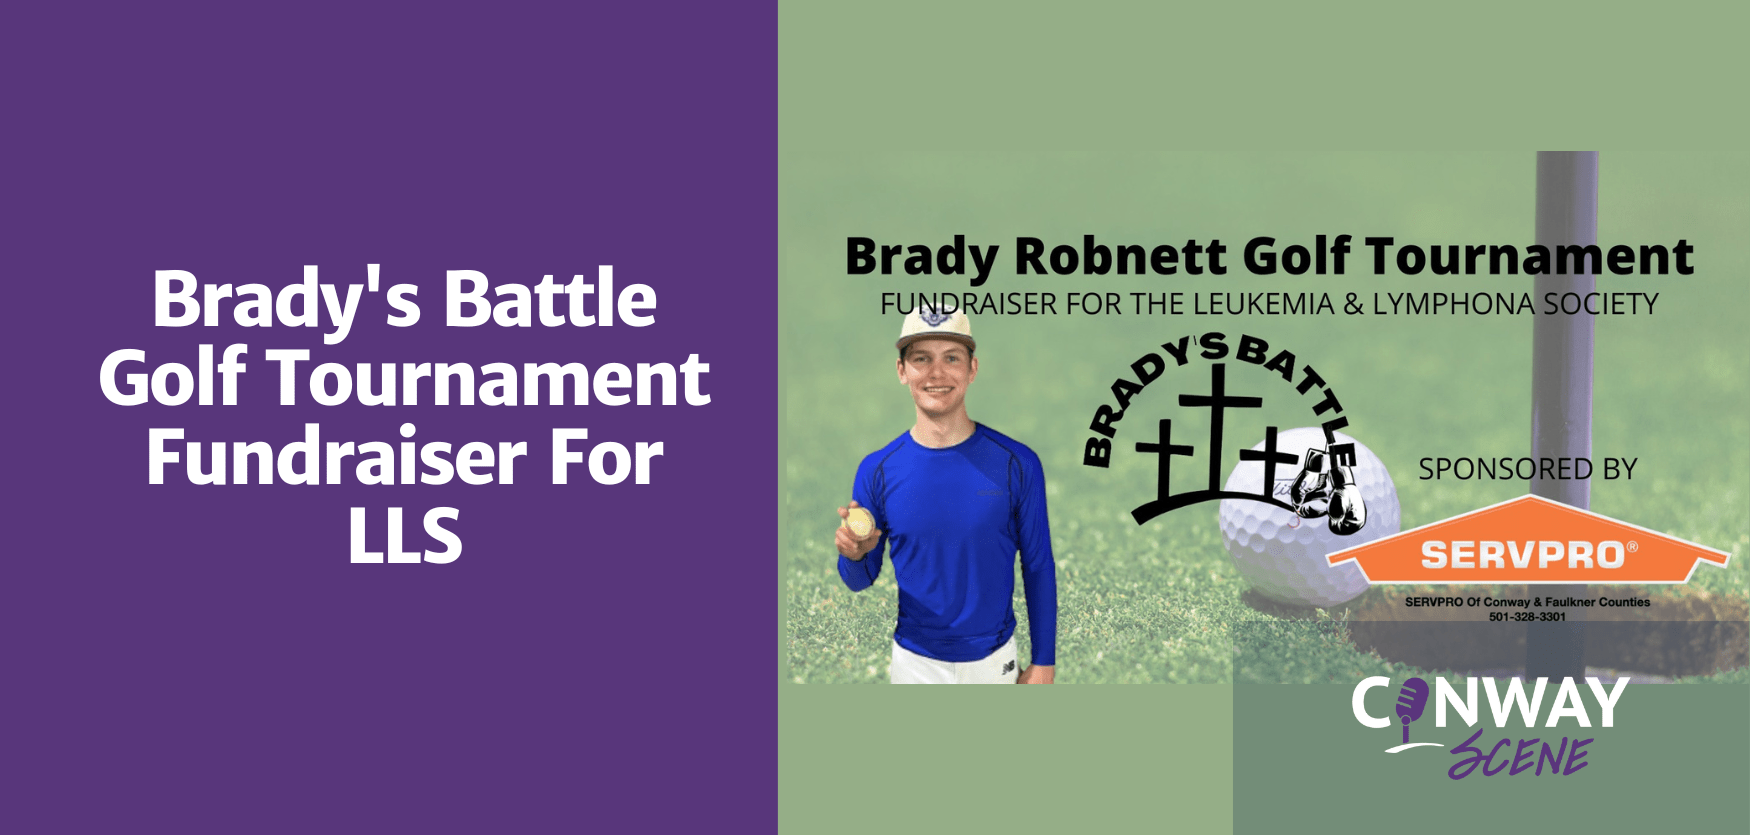 Brady's Battle Golf Tournament Fundraiser For LLS